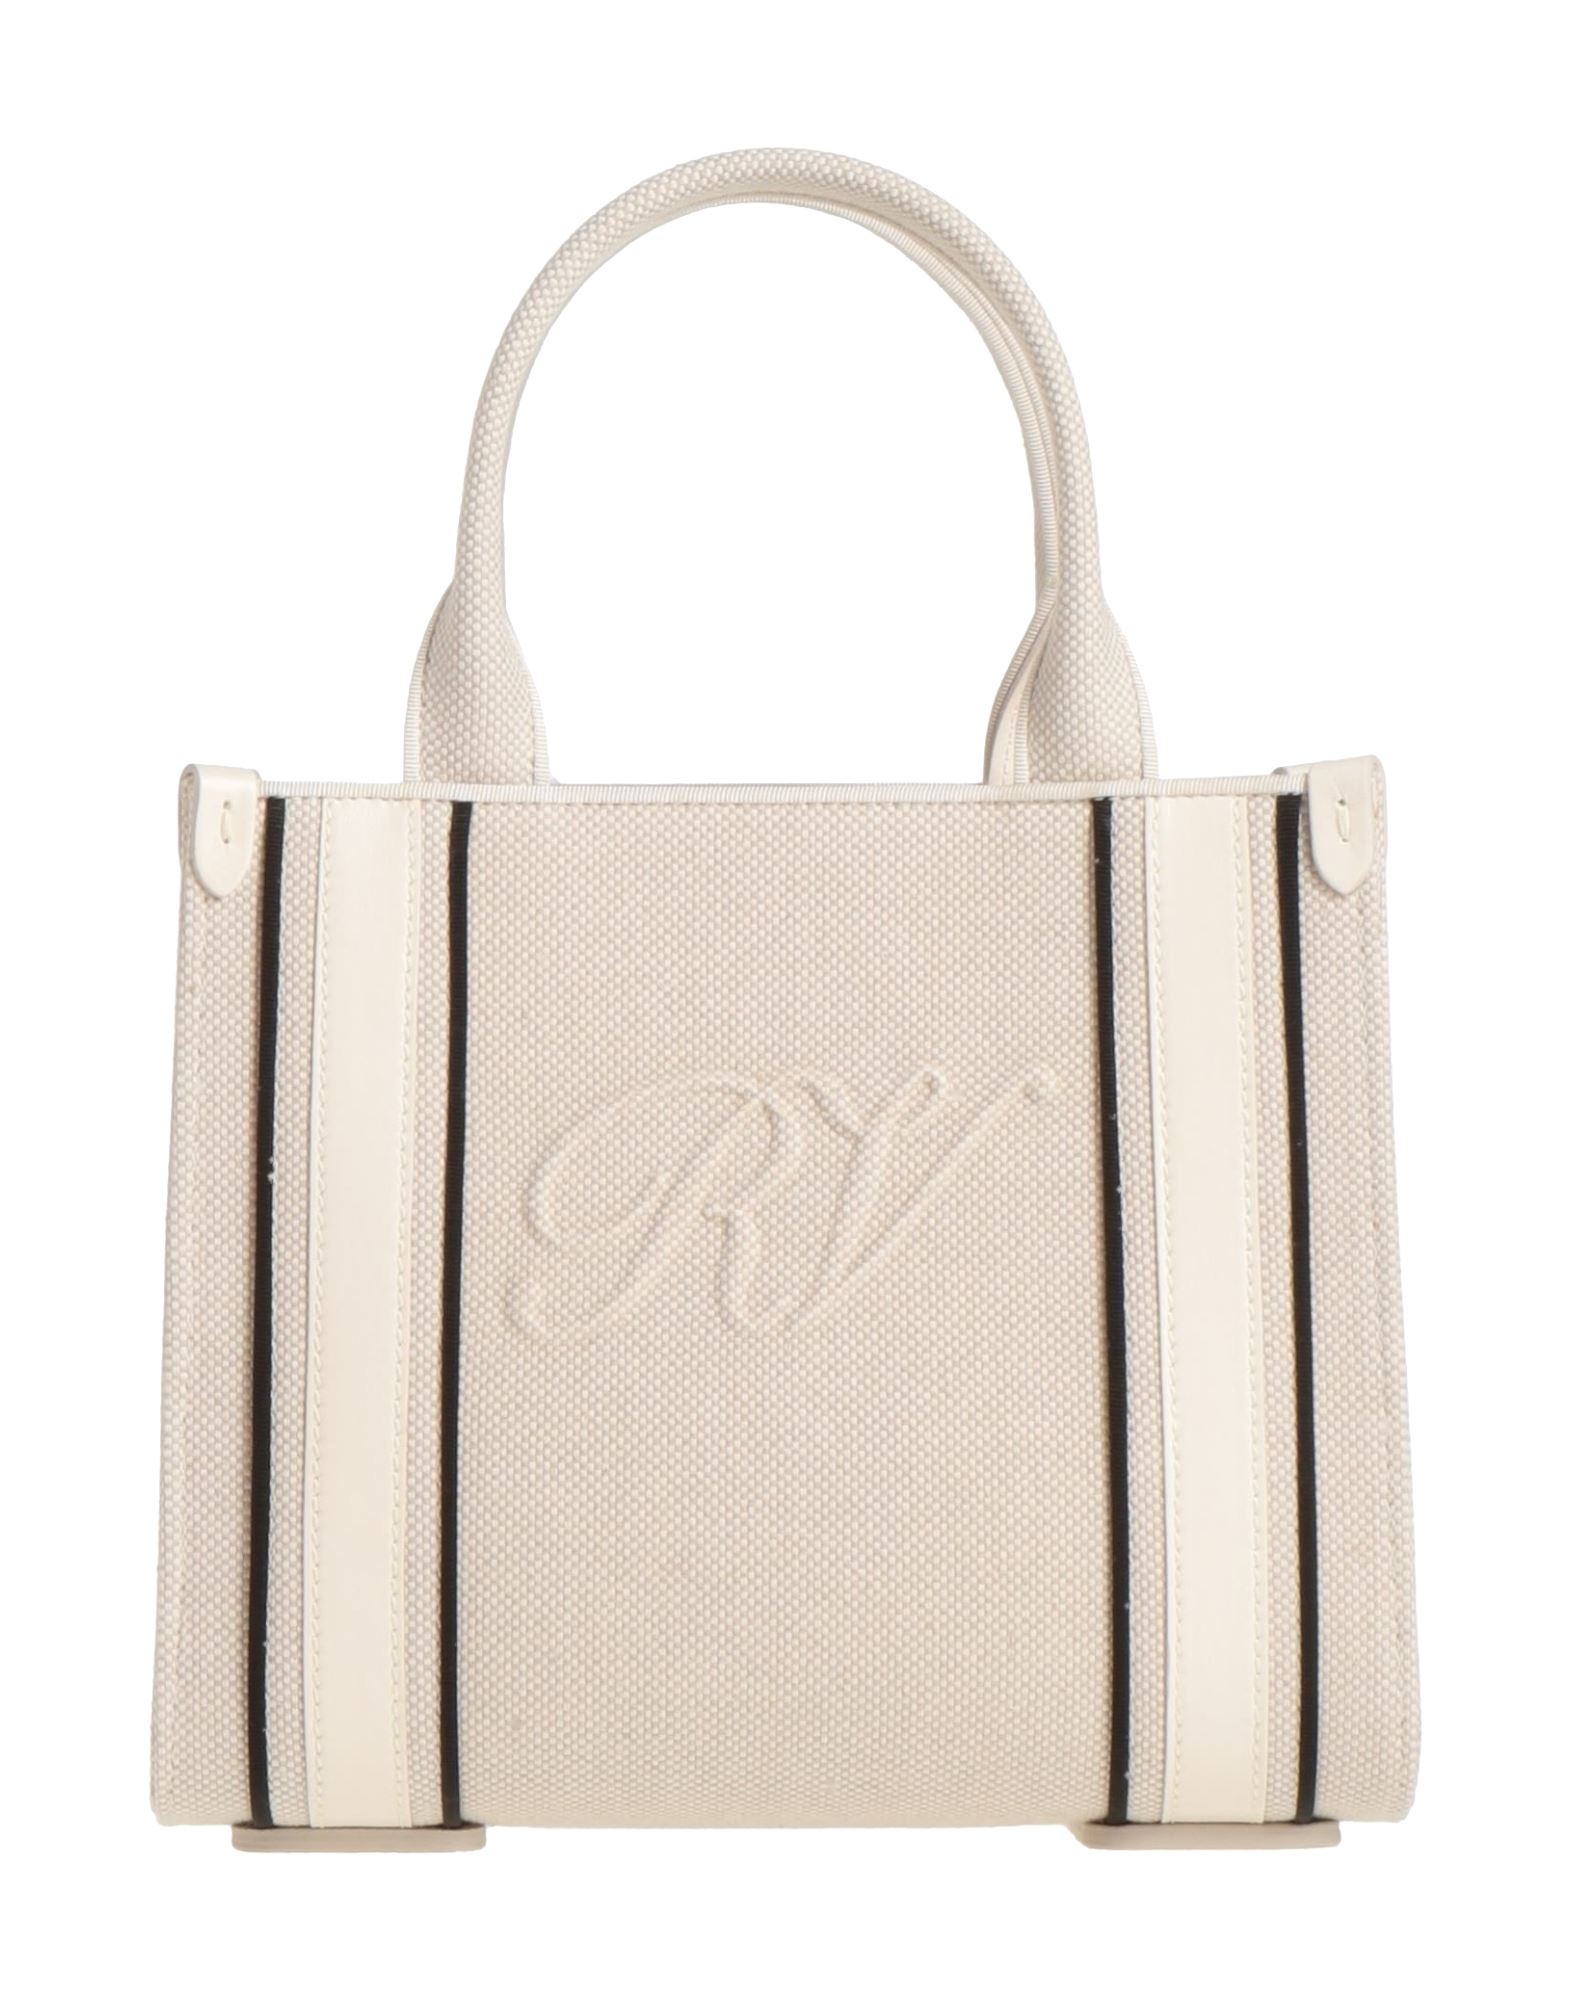 Roger Vivier Handbags In White